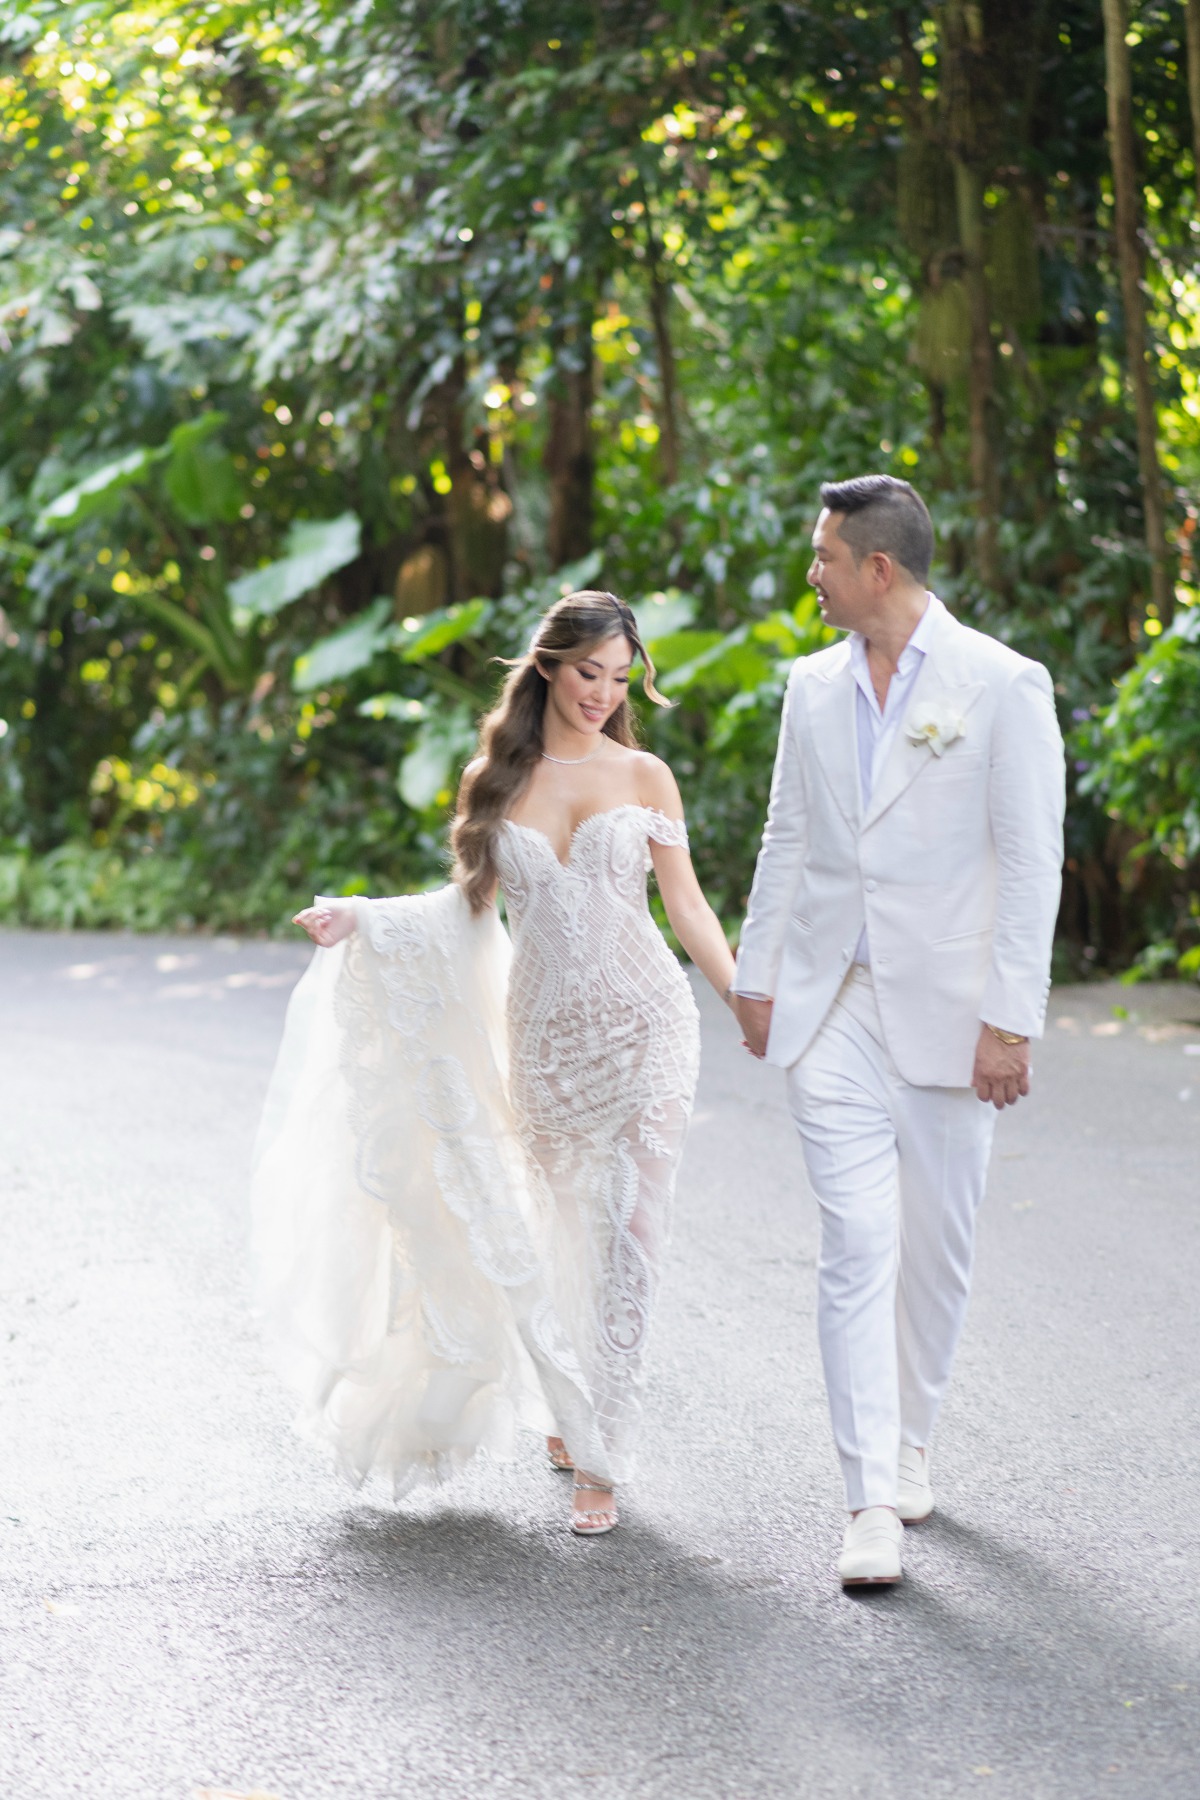 Tropical Thai wedding newlyweds